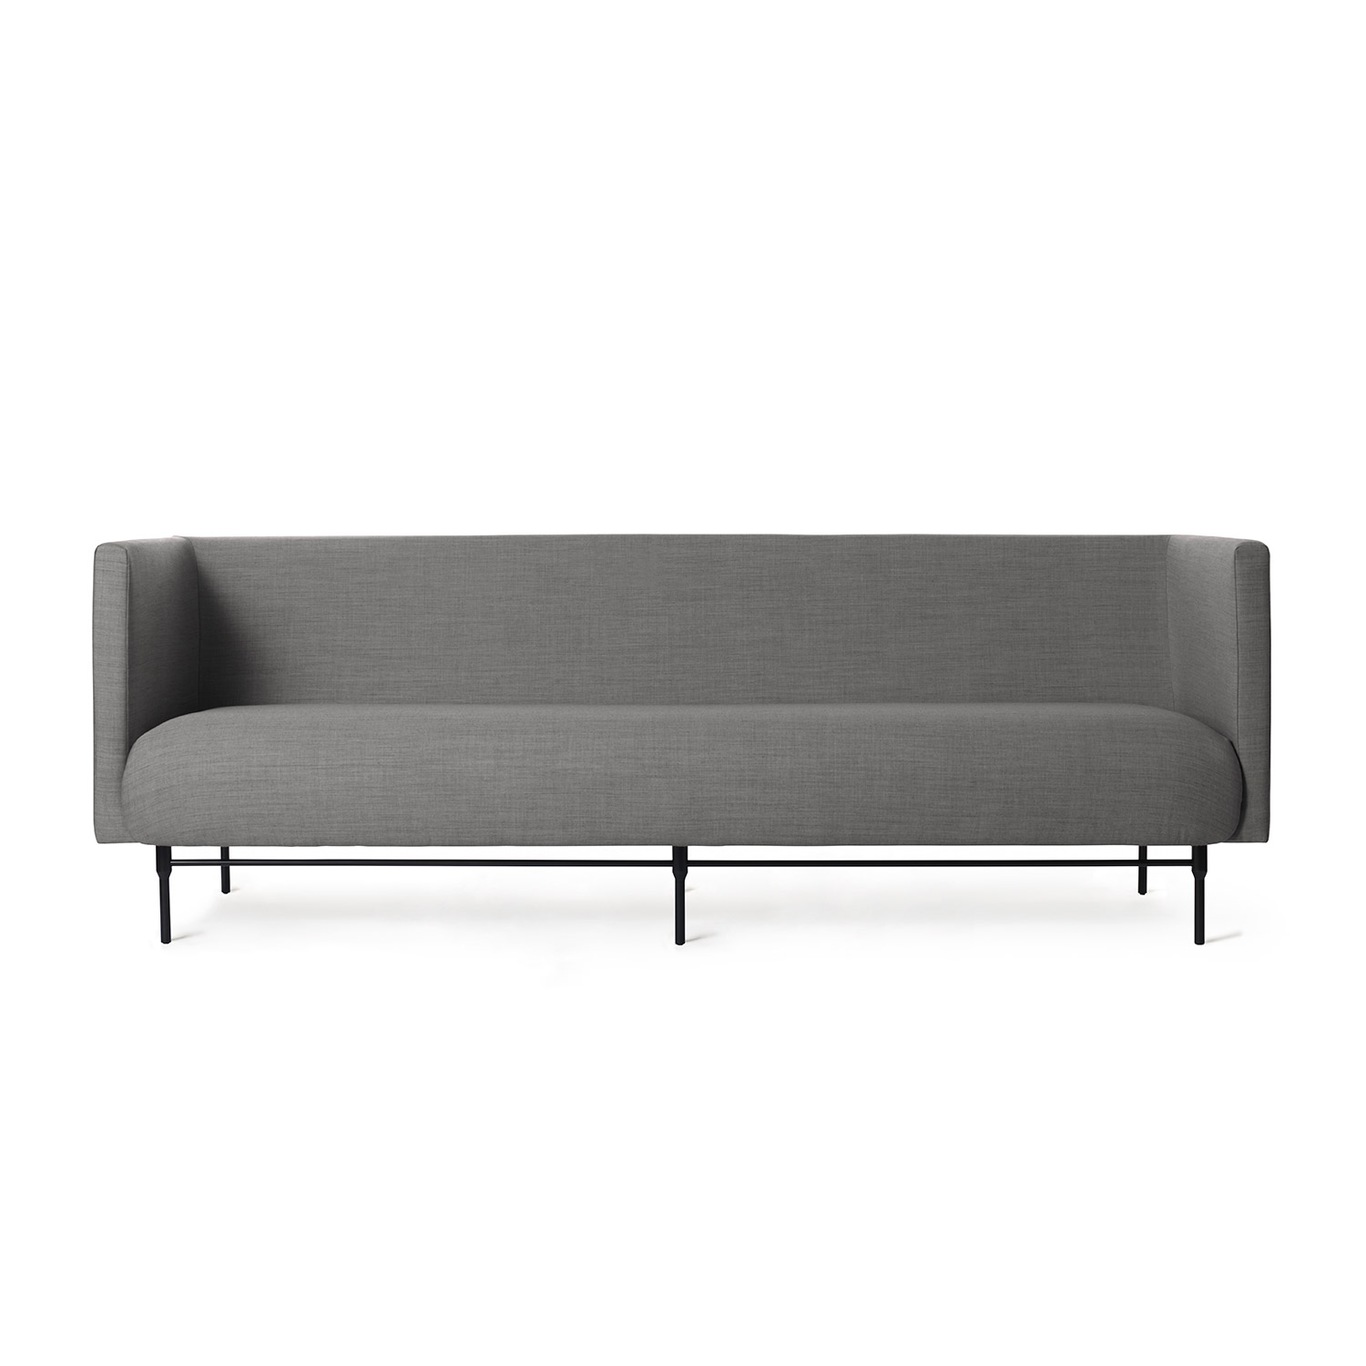 Galore 3-Seter Sofa, Grey melange